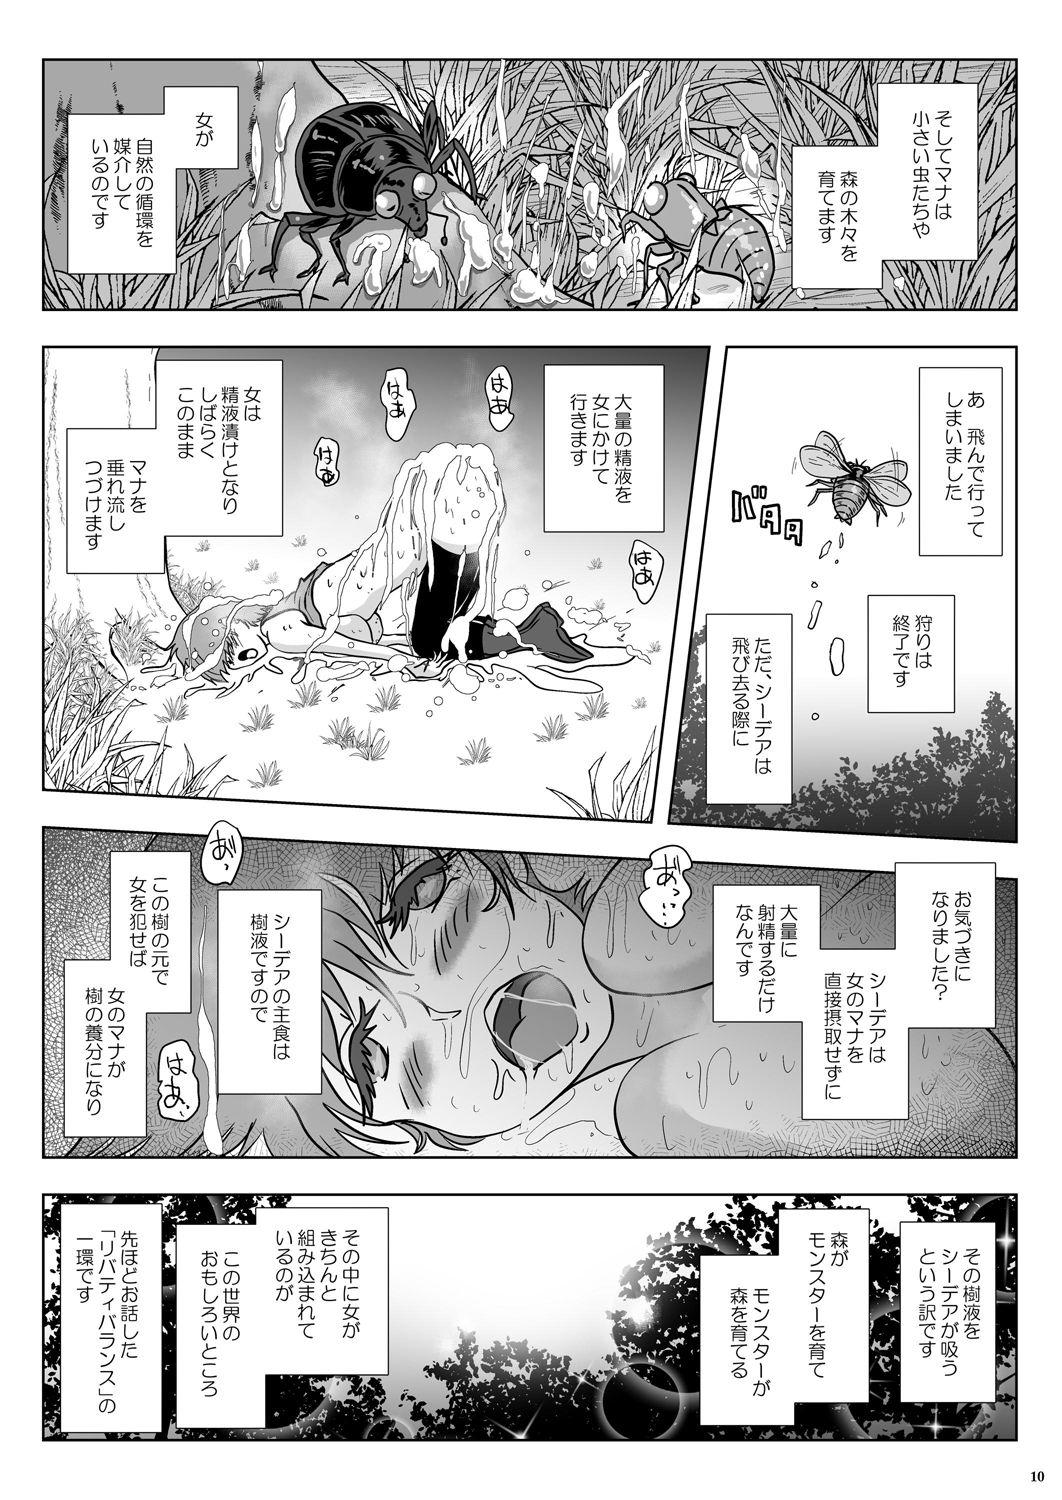 Sloppy Go To Larvataurs #02 "Hokaku Chuunyuu Nakadashi Mushi no Miyako" Piss - Page 10